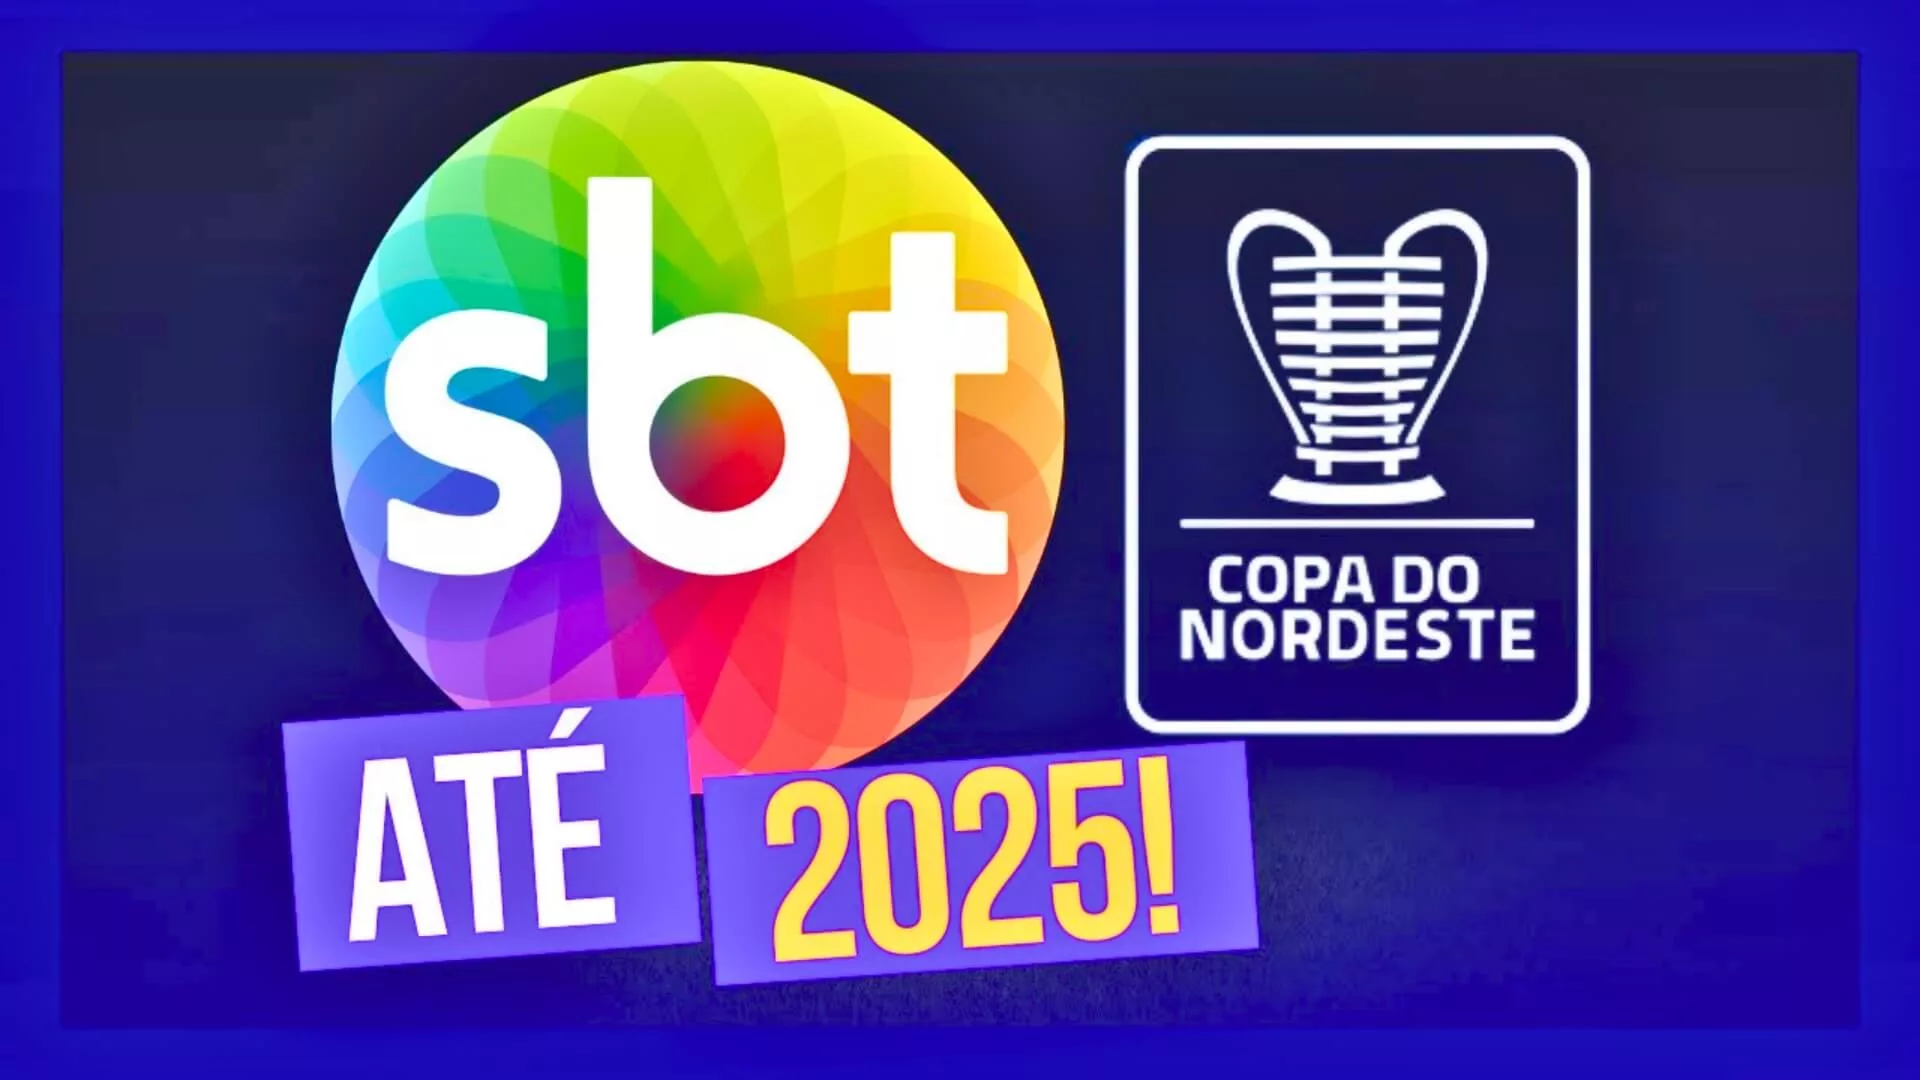 SBT renova contrato para transmitir Copa do Nordeste com grandes patrocinadores